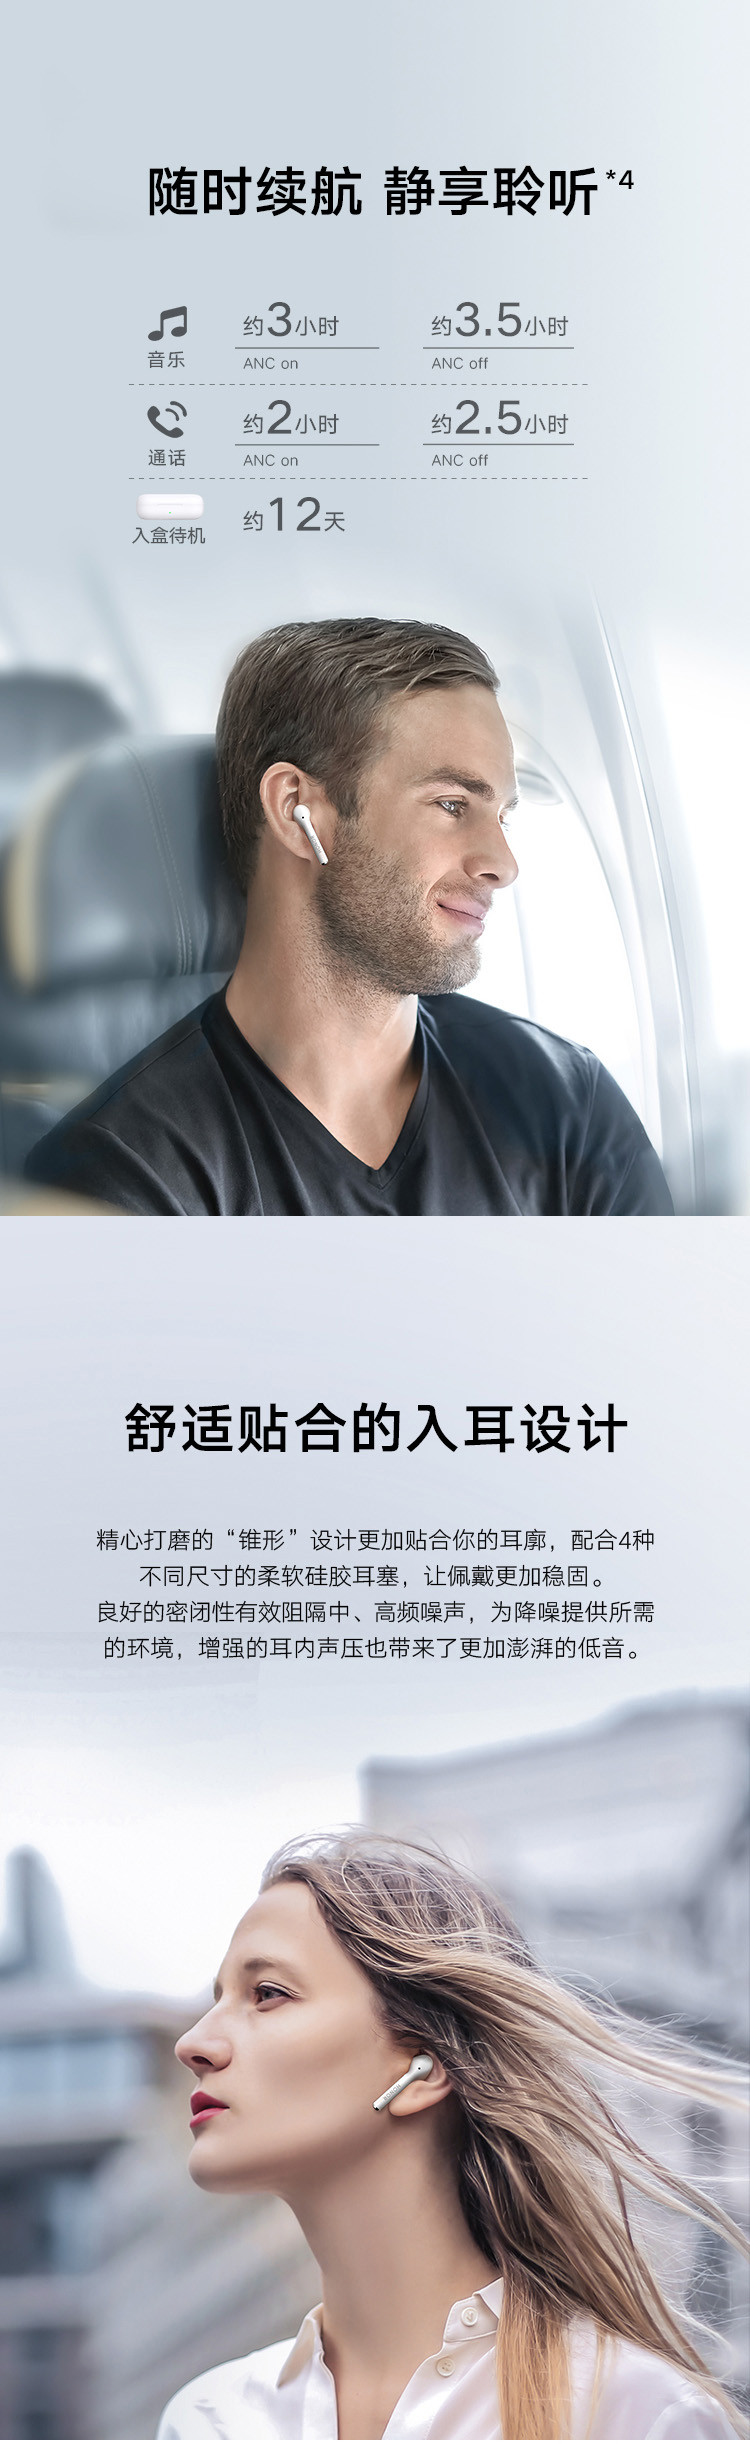 荣耀FlyPods 3 无线耳机 蓝牙耳机 主动降噪 通话降噪 触控式操作 入耳式 音乐耳机